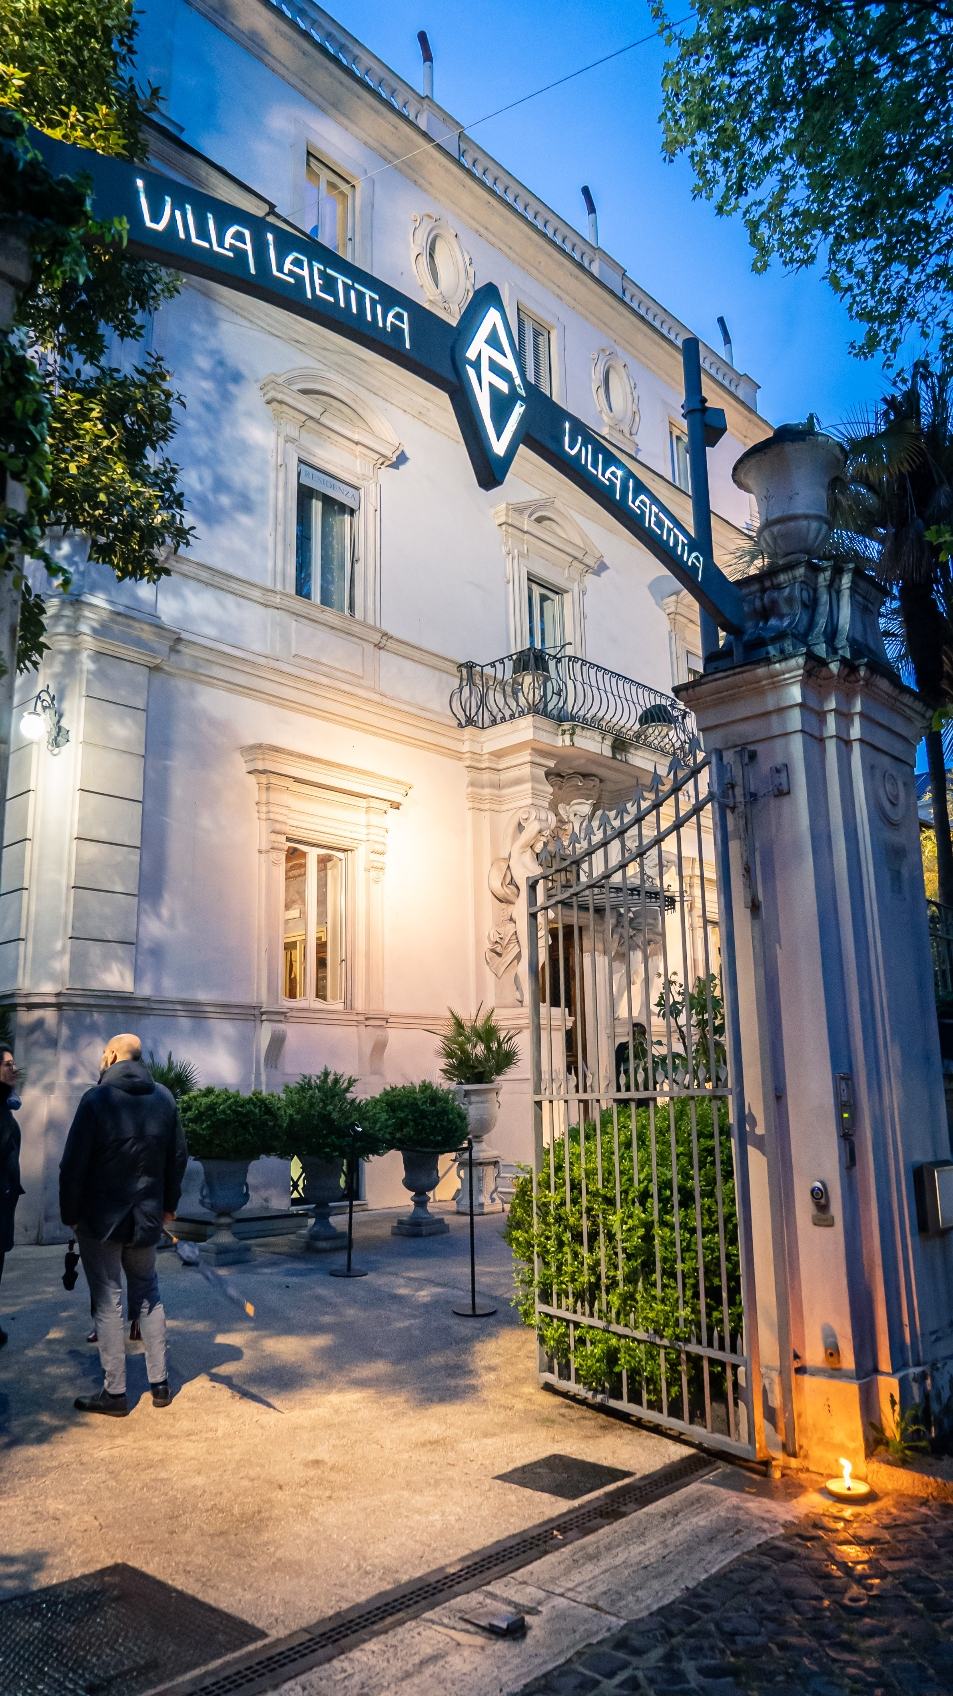 Villa Laetitia Fendi Roma, articolo: Lugana On Tour Roma 2023, il Veneto in trasferta nel Lazio, foto di Cristina Santini